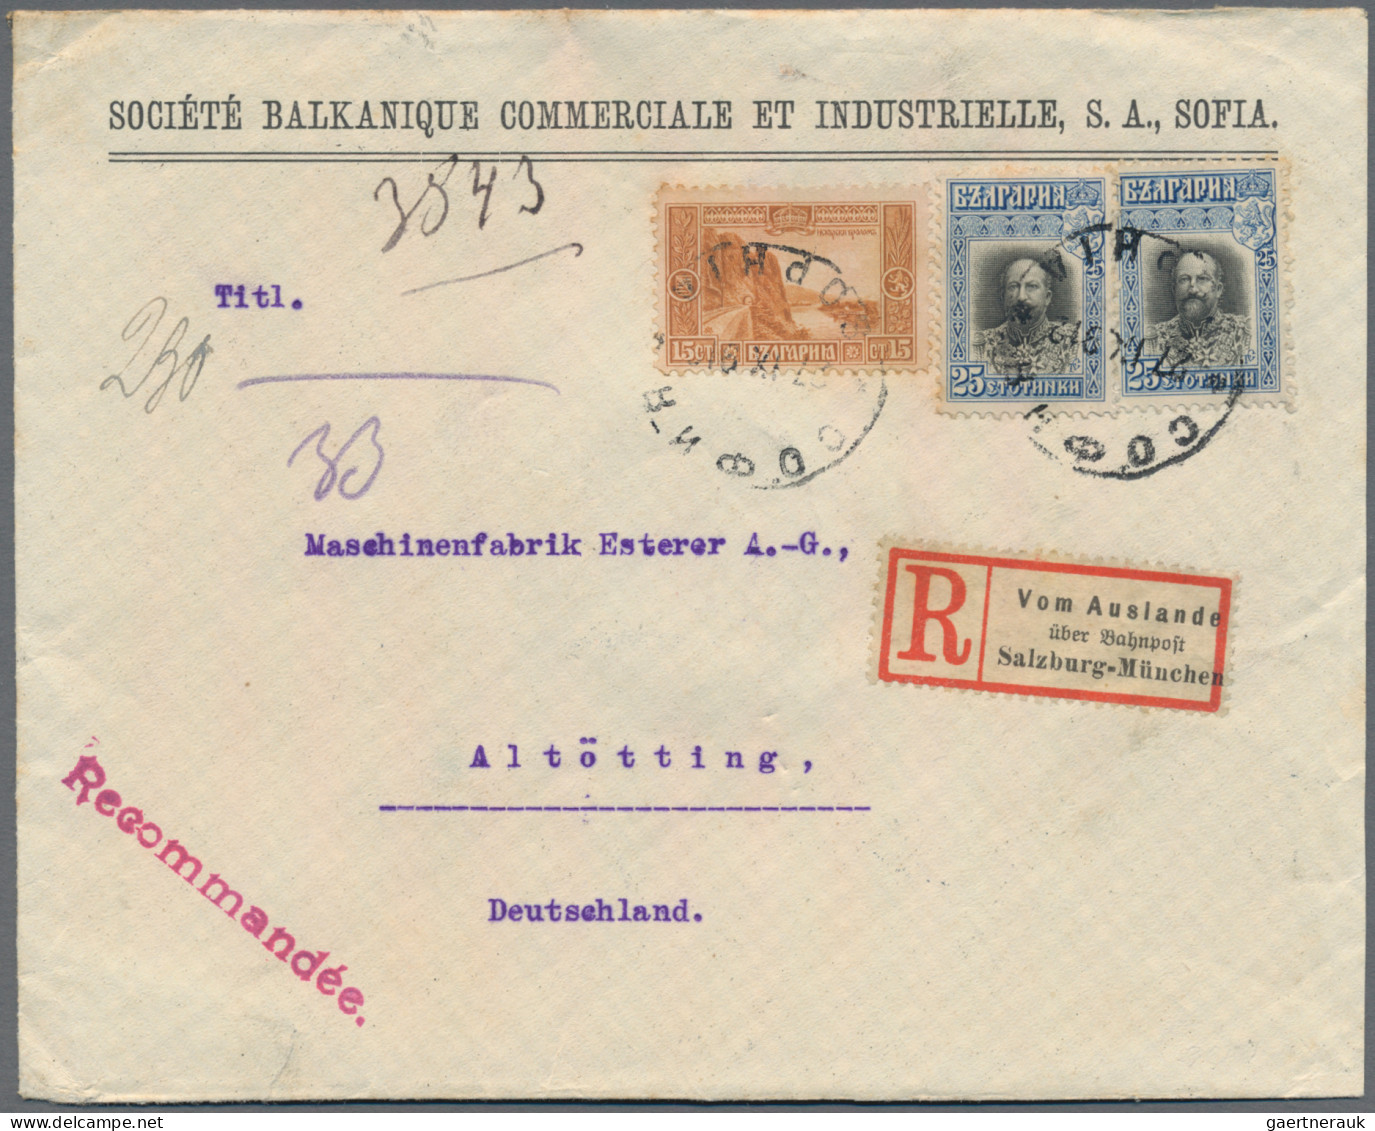 Nachlässe: 1901 - 1943, Kleiner Posten von 6 Briefen und einer Karte, dabei offi